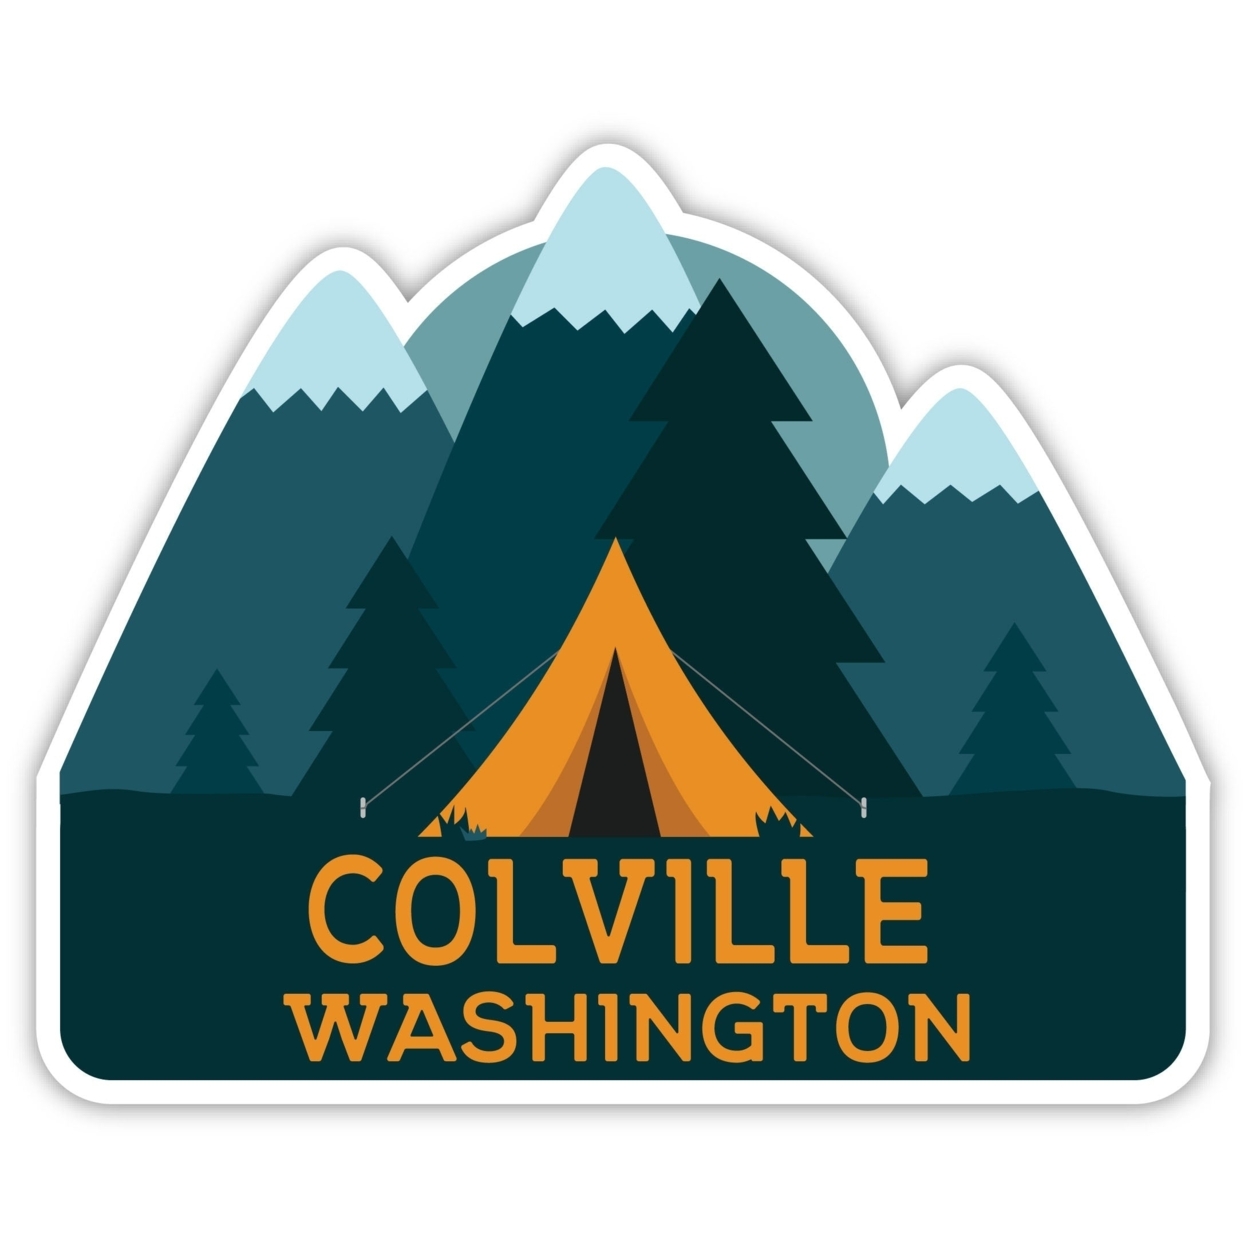 Colville Washington Souvenir Decorative Stickers (Choose Theme And Size) - Single Unit, 10-Inch, Tent